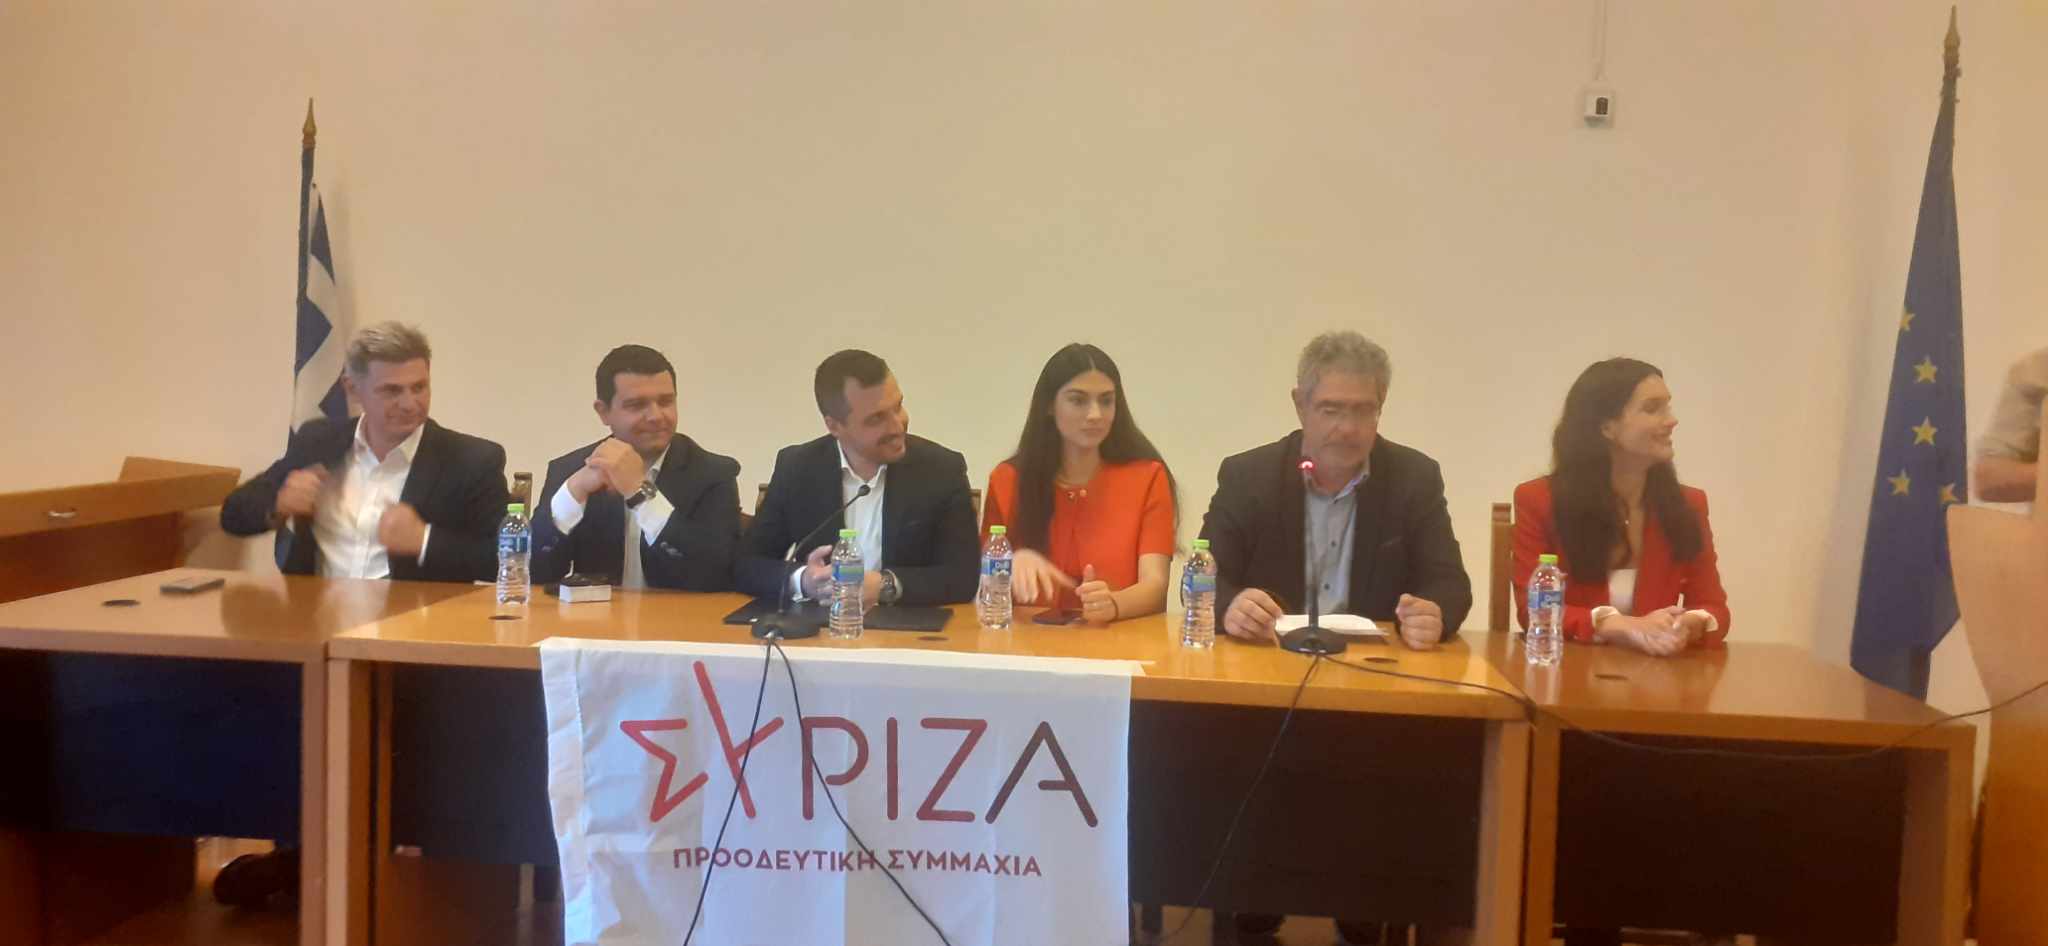 Νίκος Παππάς από Βόλο: Ο Κ. Μητσοτάκης οφείλει να ζητήσει «συγγνώμη» από τον ΣΥΡΙΖΑ και να εφαρμόσει τη συμφωνία των Πρεσπών